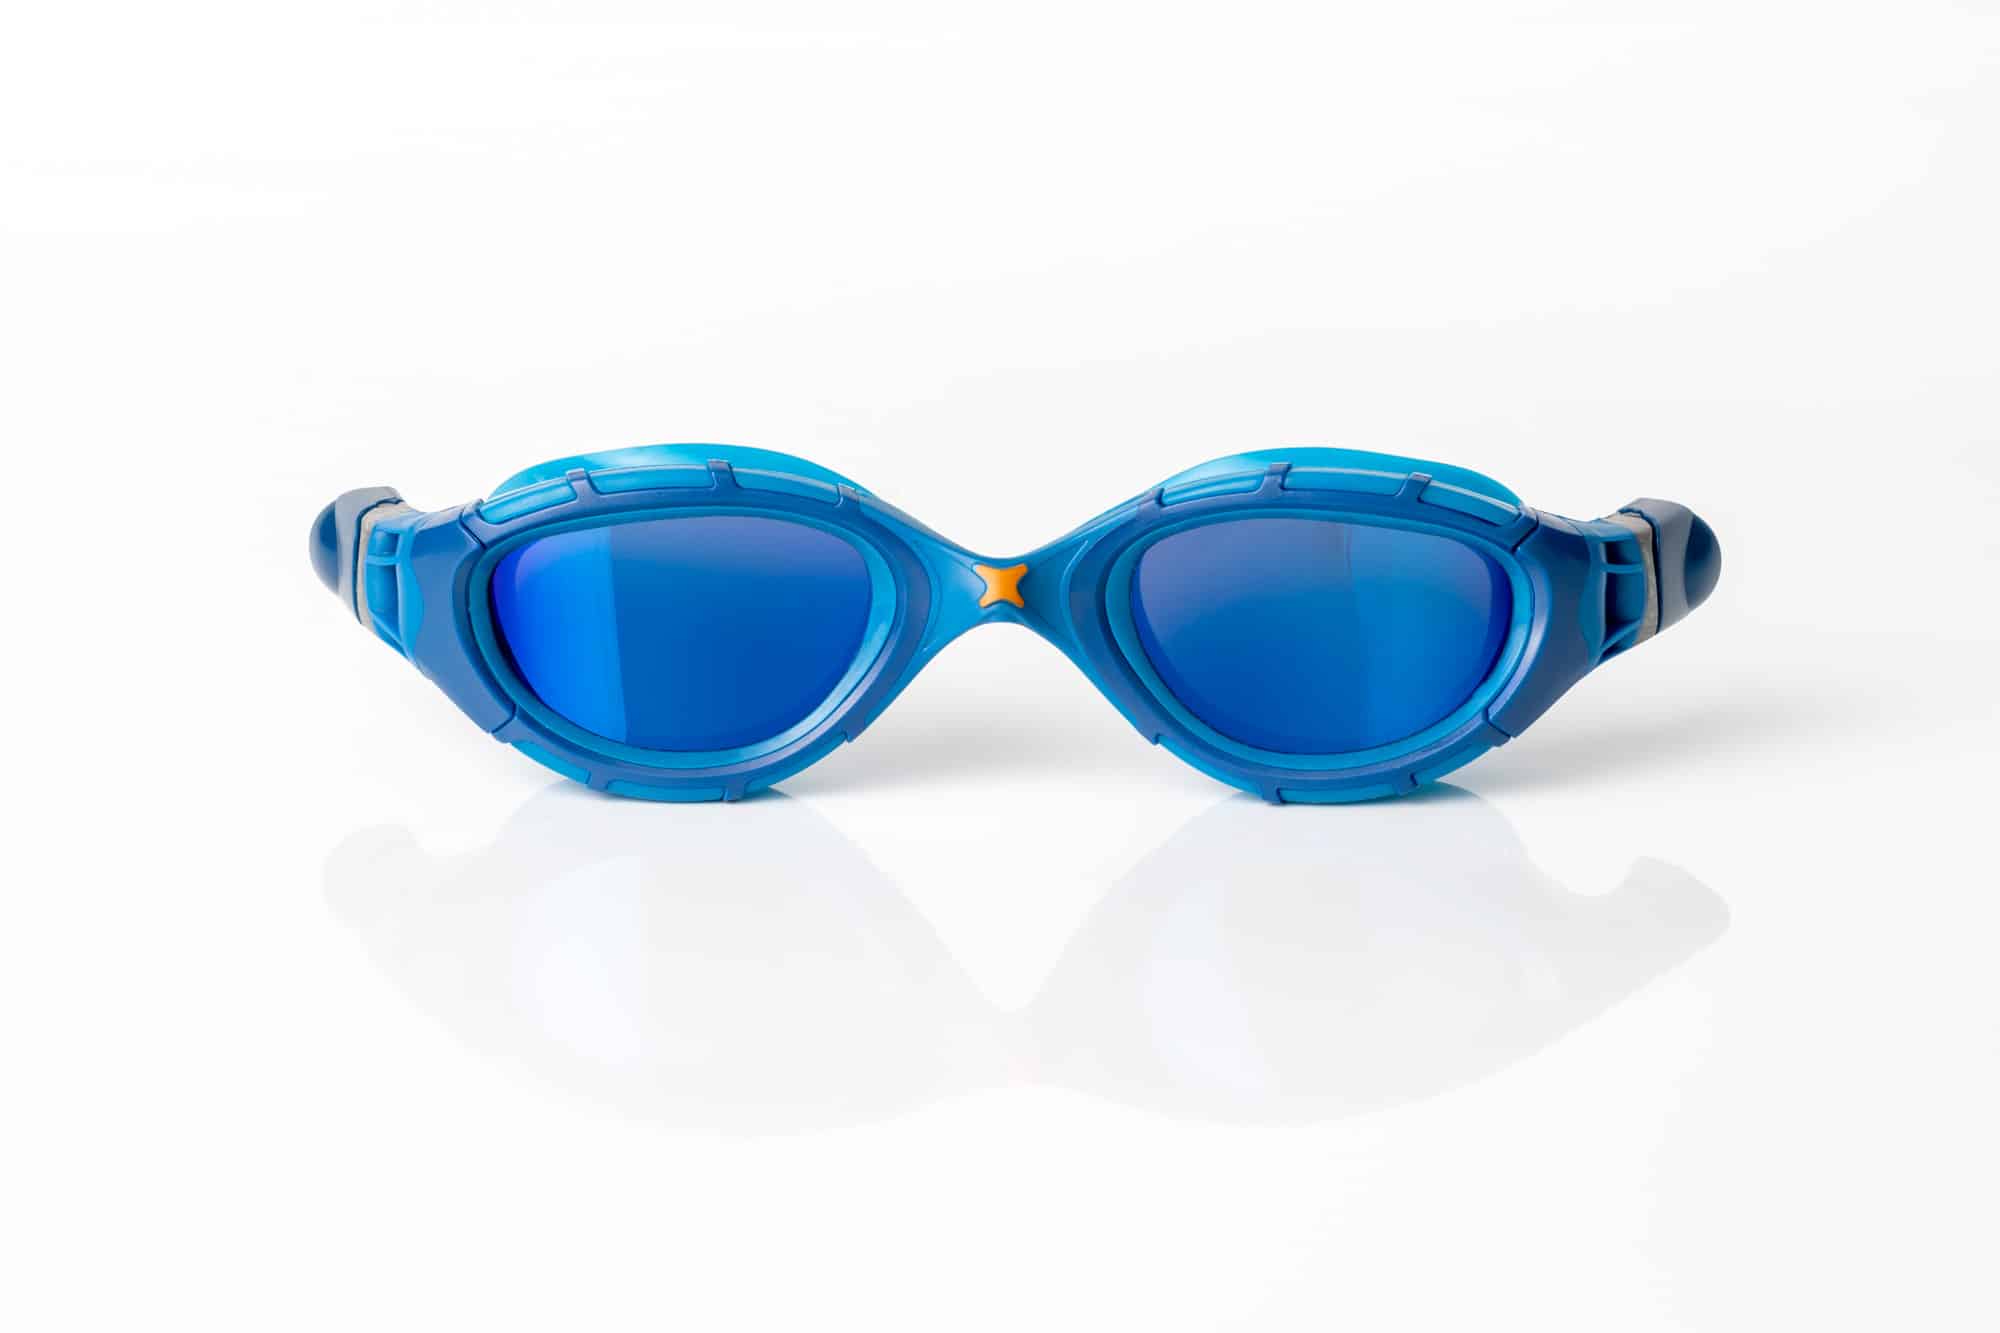 Gafas natación Zoggs Predator Flex Polarized-gafas zoggs polarizadas